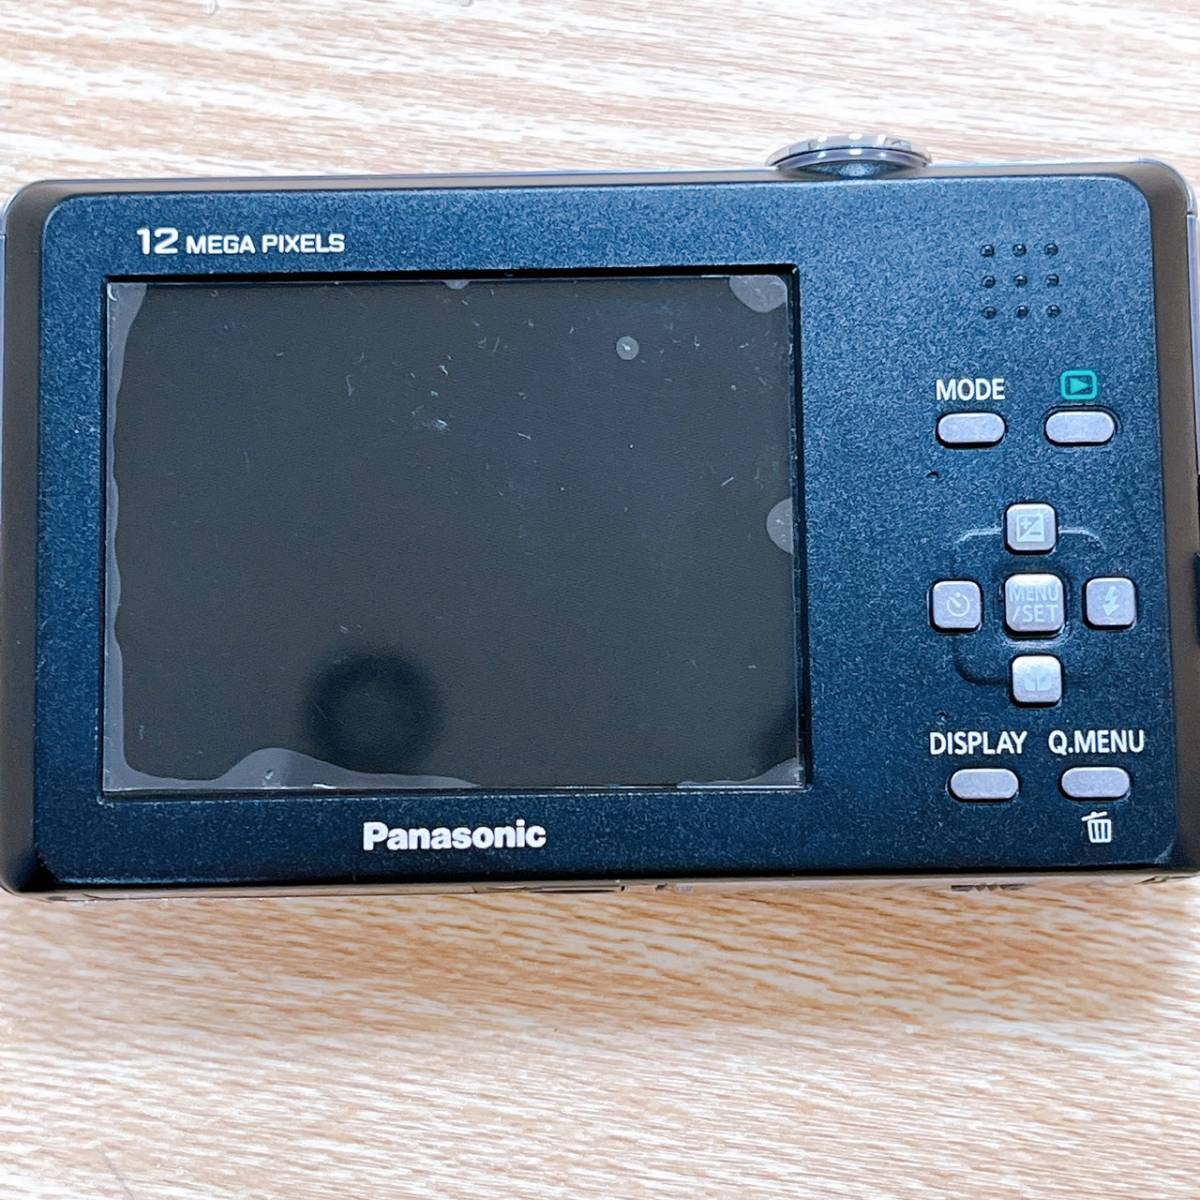 パナソニック Panasonic ルミックス LUMIX 1:3.5-5.9/6.3-25.2 ASPH コンパクトカメラ デジタルカメラ デジカメ DMC-FP1 シルバー【16257_画像4